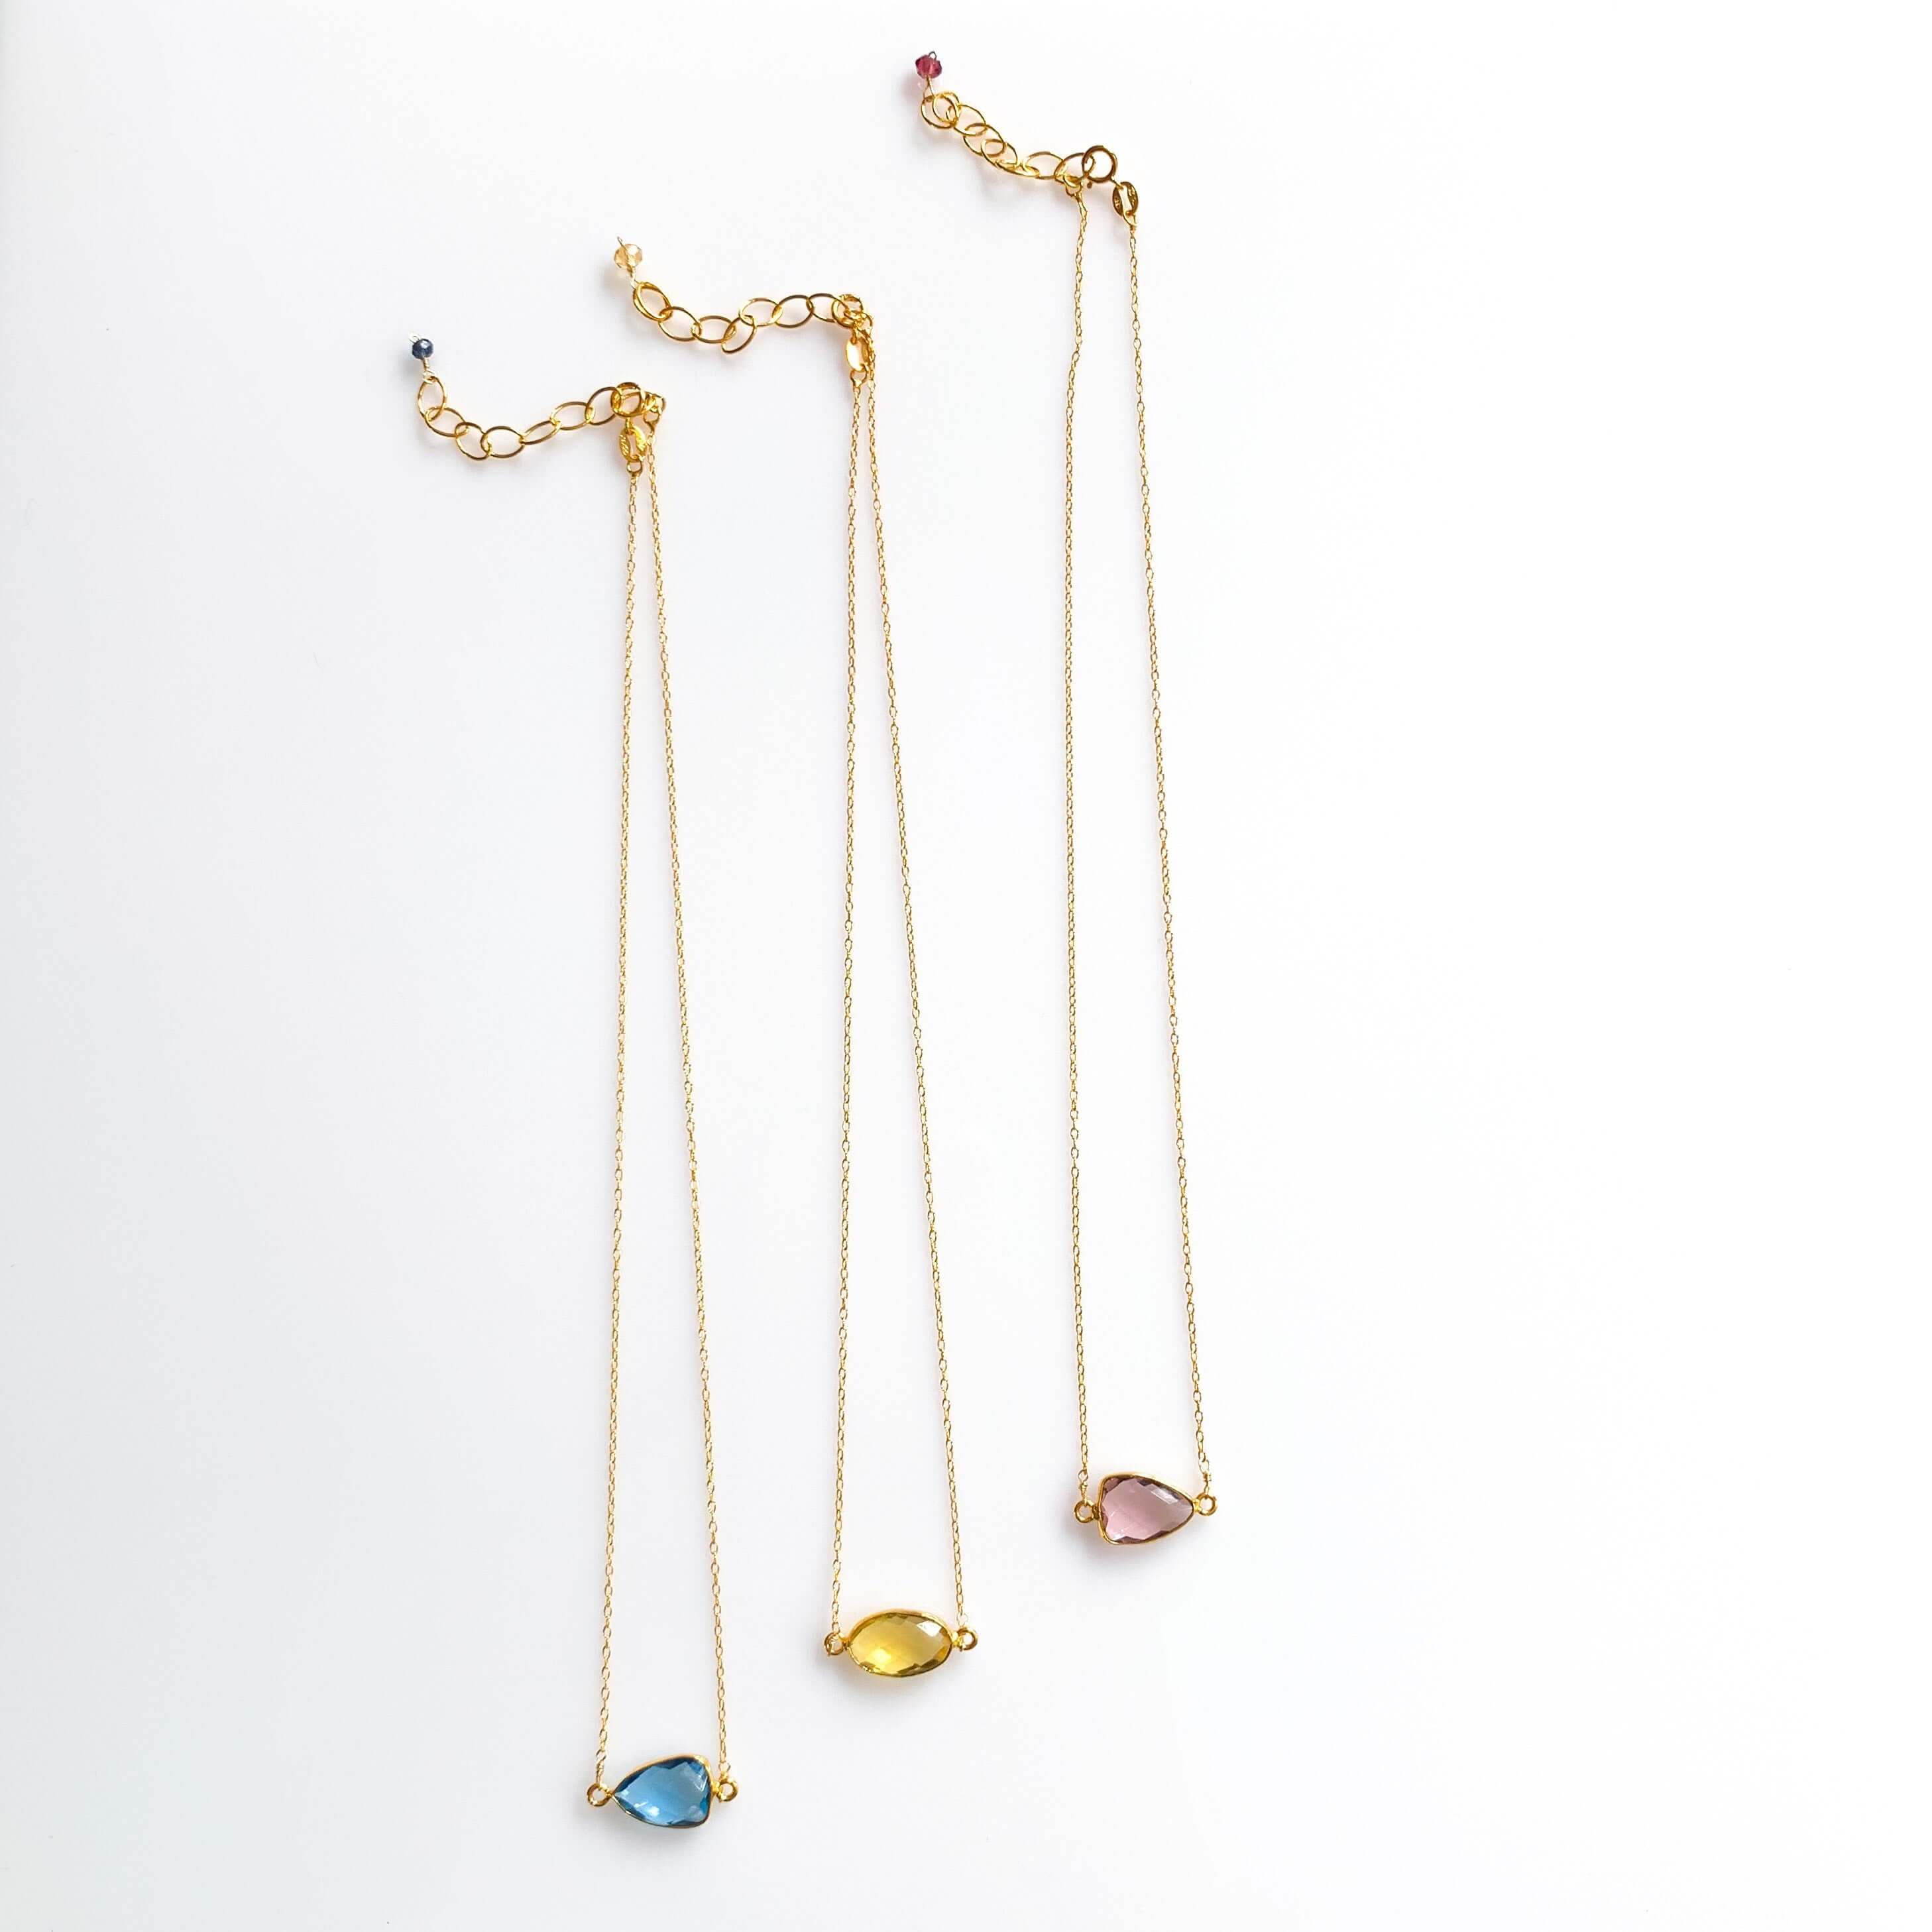 Colorful Bezel-Set Gemstones in a 14k Gold Necklace